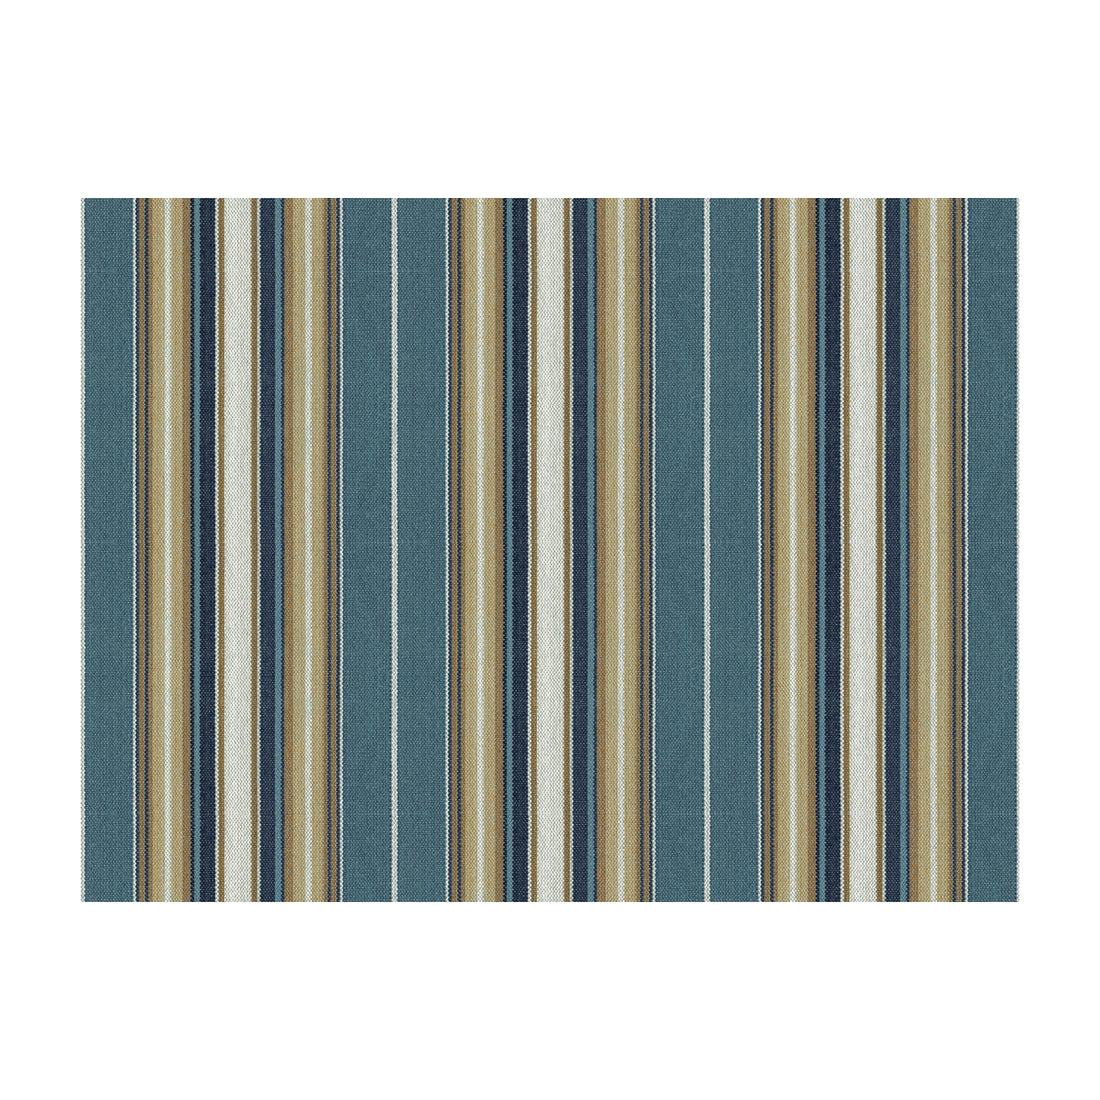 Kravet Basics fabric in 33241-516 color - pattern 33241.516.0 - by Kravet Basics in the Kravet Colors collection